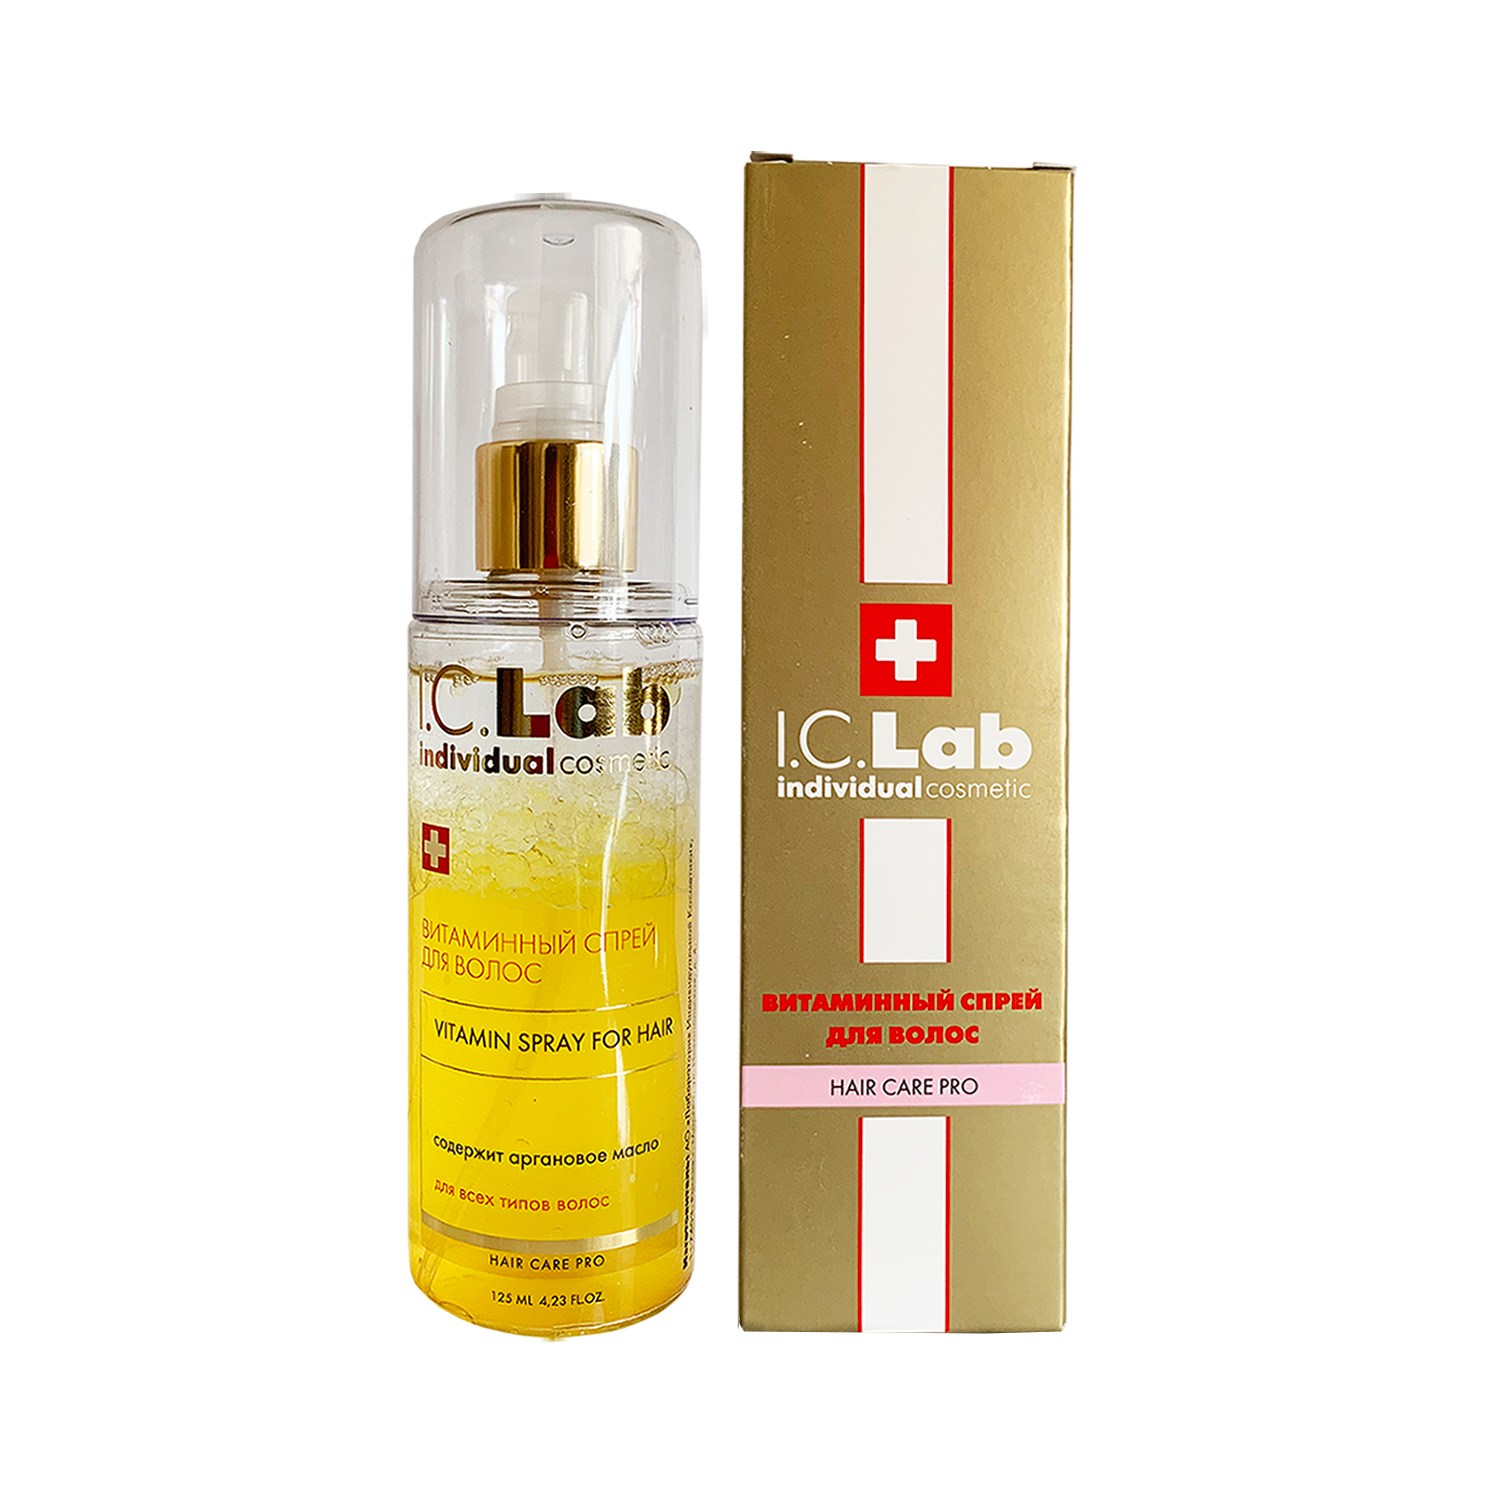 Витаминный спрей для волос I.C.Lab Individual cosmetic спрей укрепление термозащита 250мл